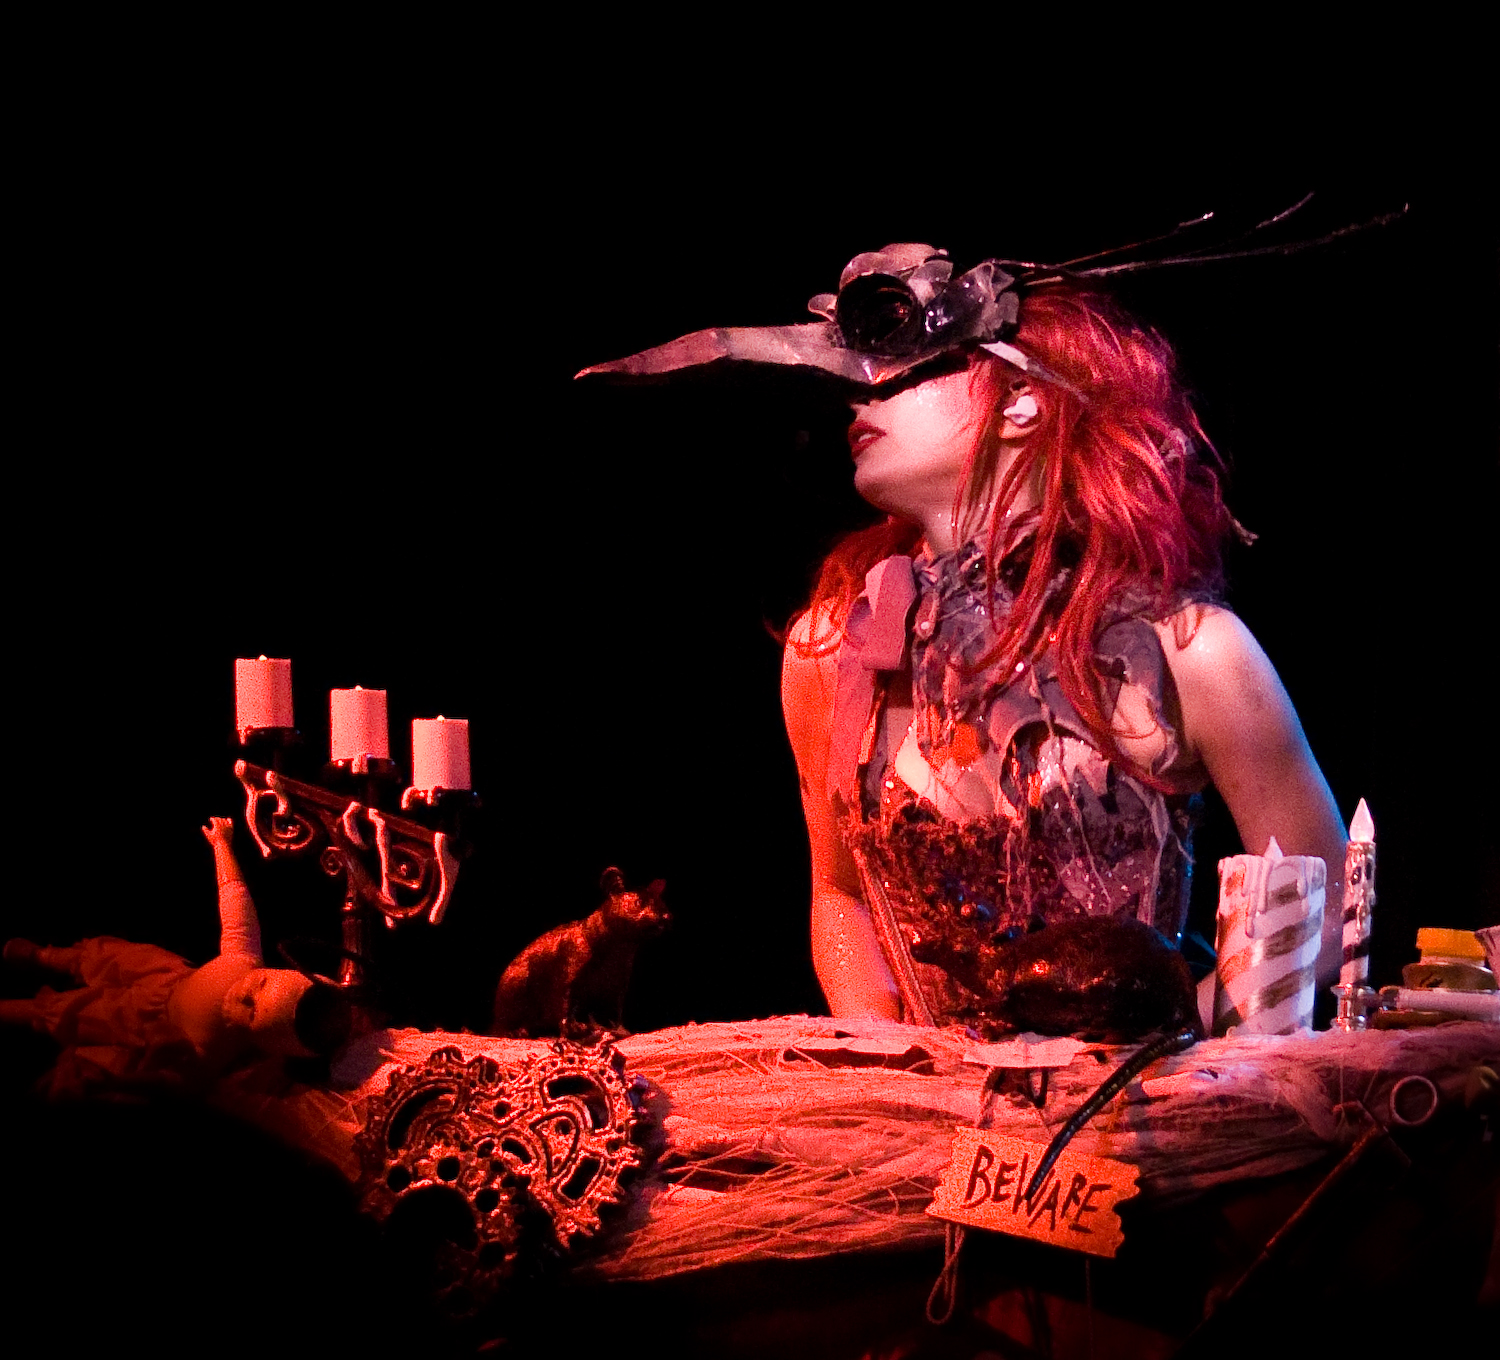 Emilie Autumn Liddell Music Singer Songwriter Poet